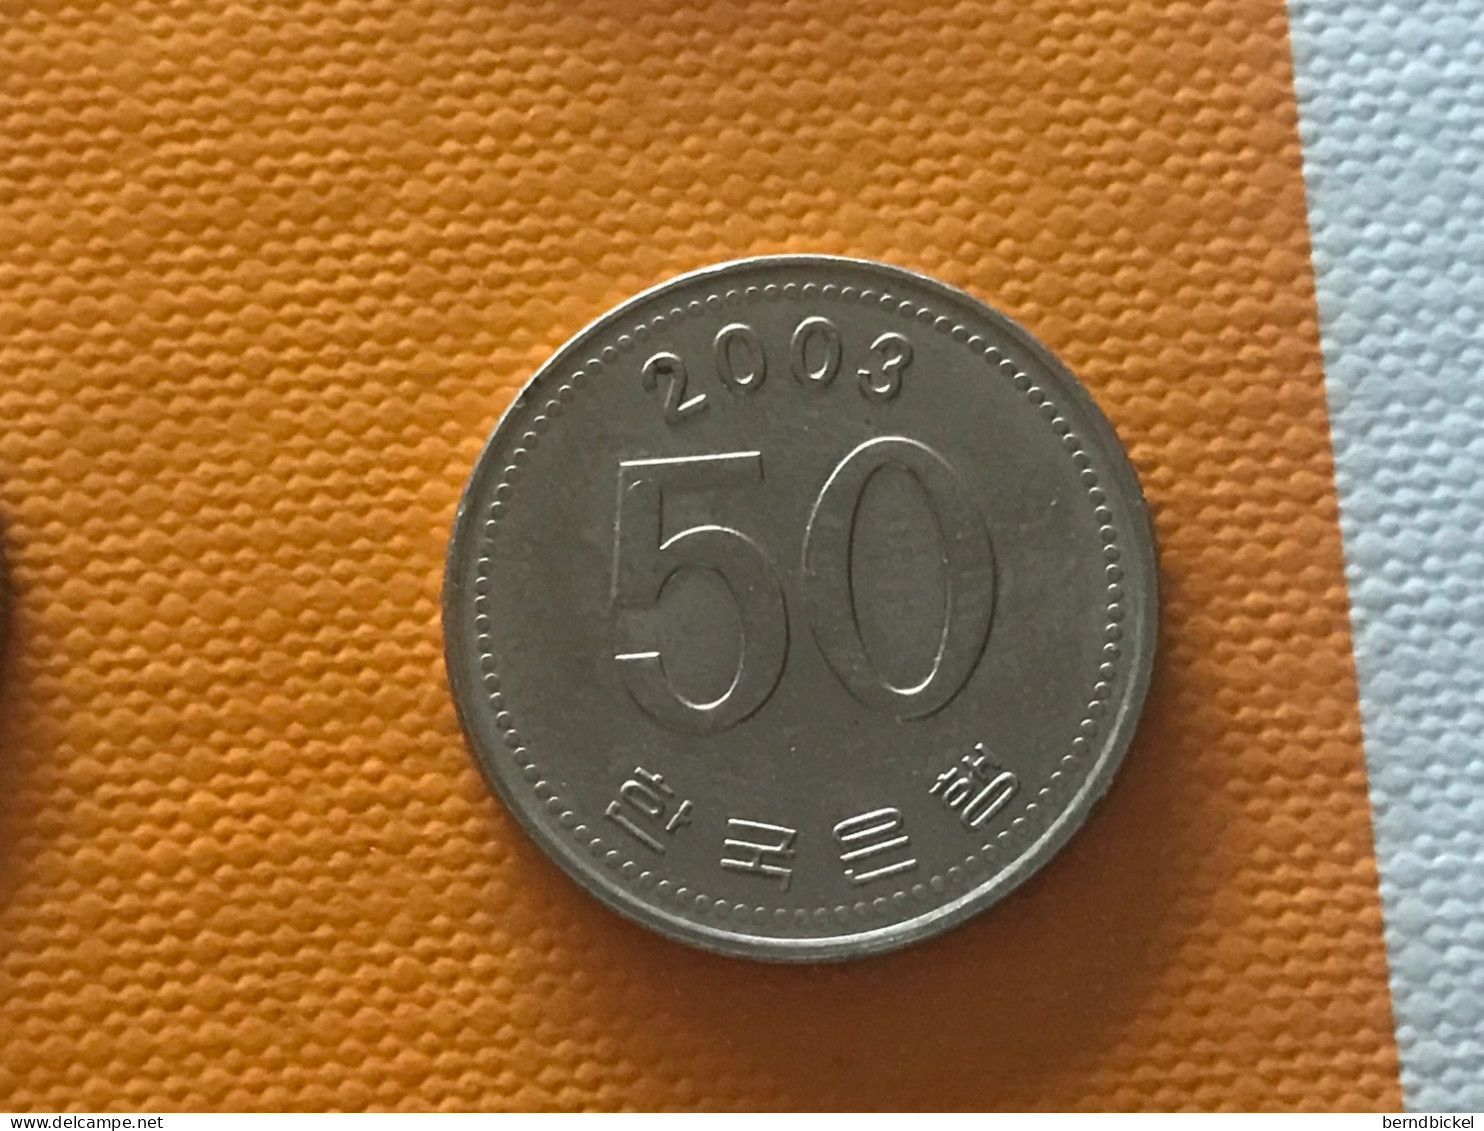 Münze Münzen Umlaufmünze Südkorea 50 Won 2003 - Corée Du Sud